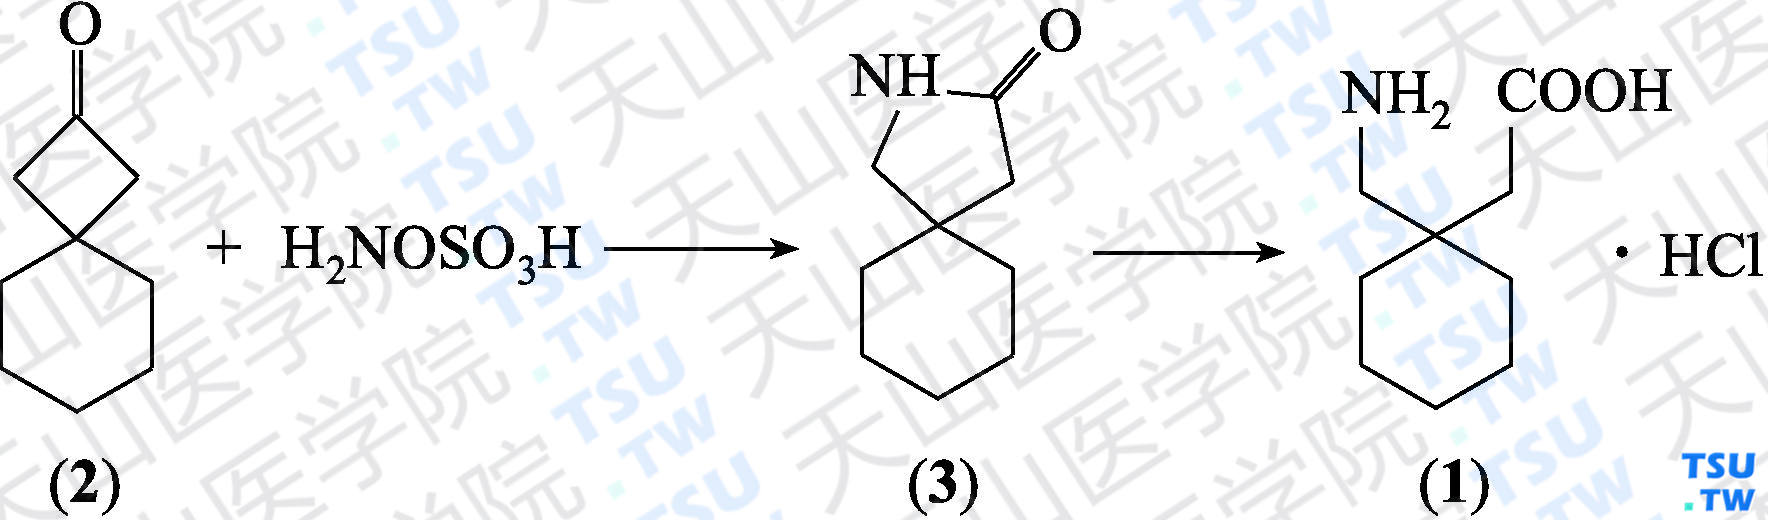 加巴喷丁盐酸盐（分子式：C<sub>9</sub>H<sub>17</sub>NO<sub>2</sub>·HCl）的合成方法路线及其结构式